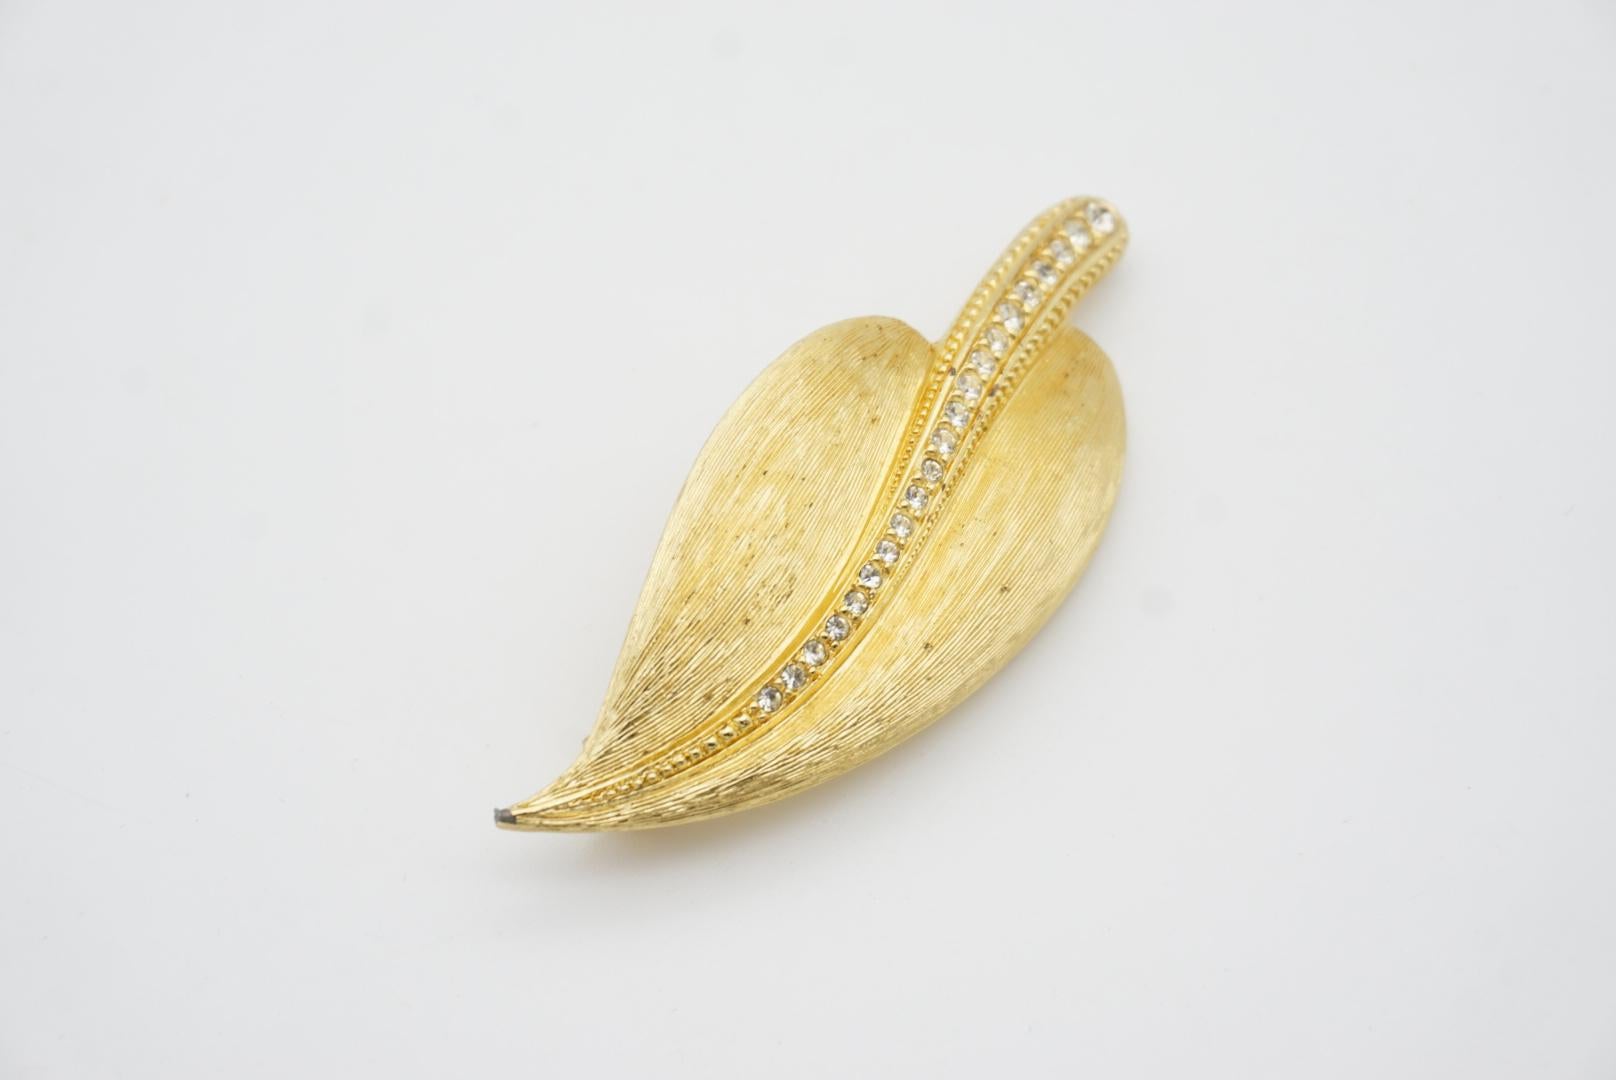 Christian Dior 1980s Vintage Large Wavy Swarovski Crystals Gold Palm Leaf Brooch For Sale 4